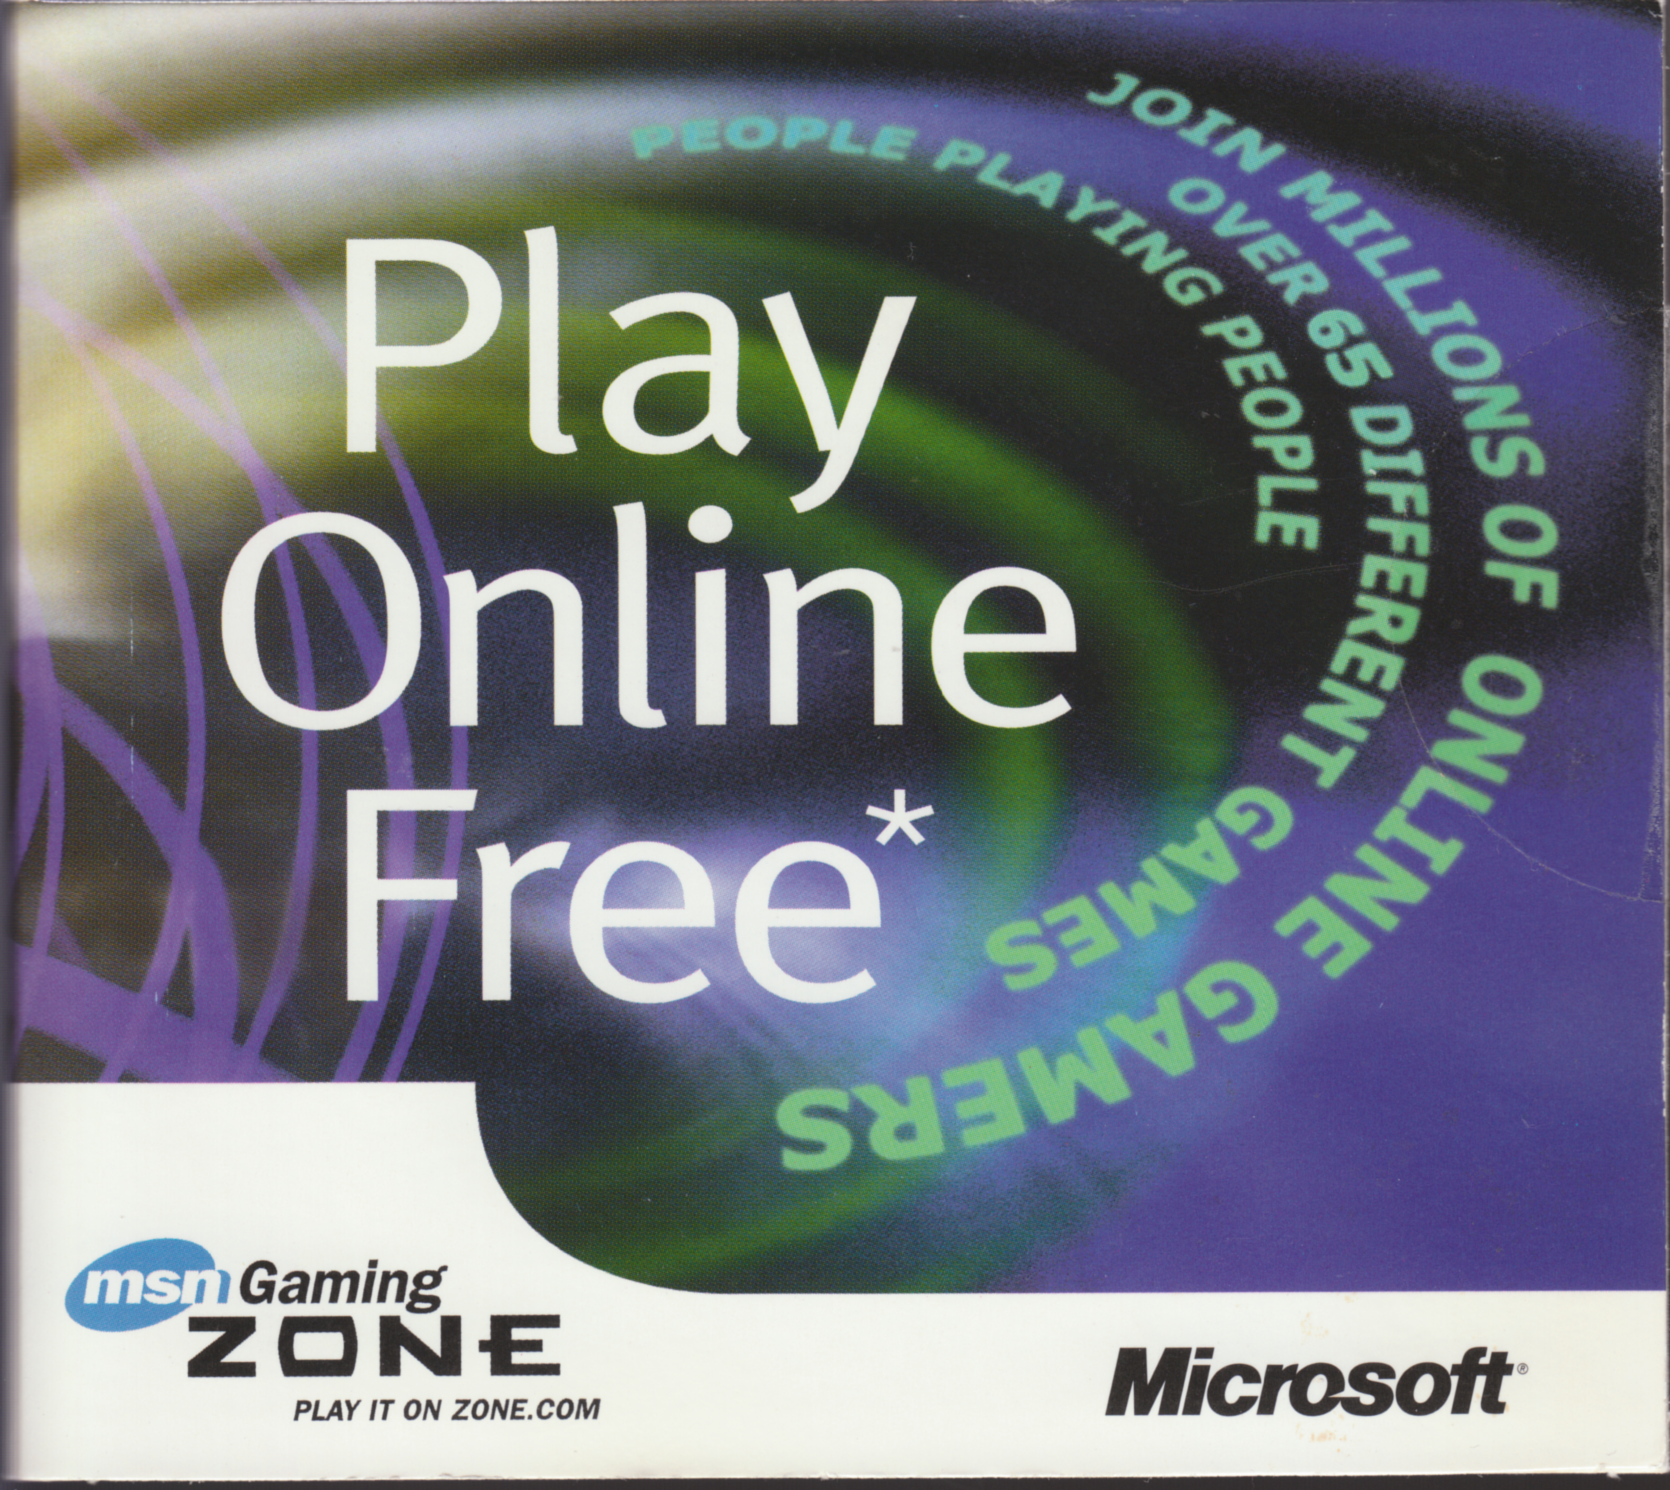 Anyone remember MSN gaming zone? : r/nostalgia